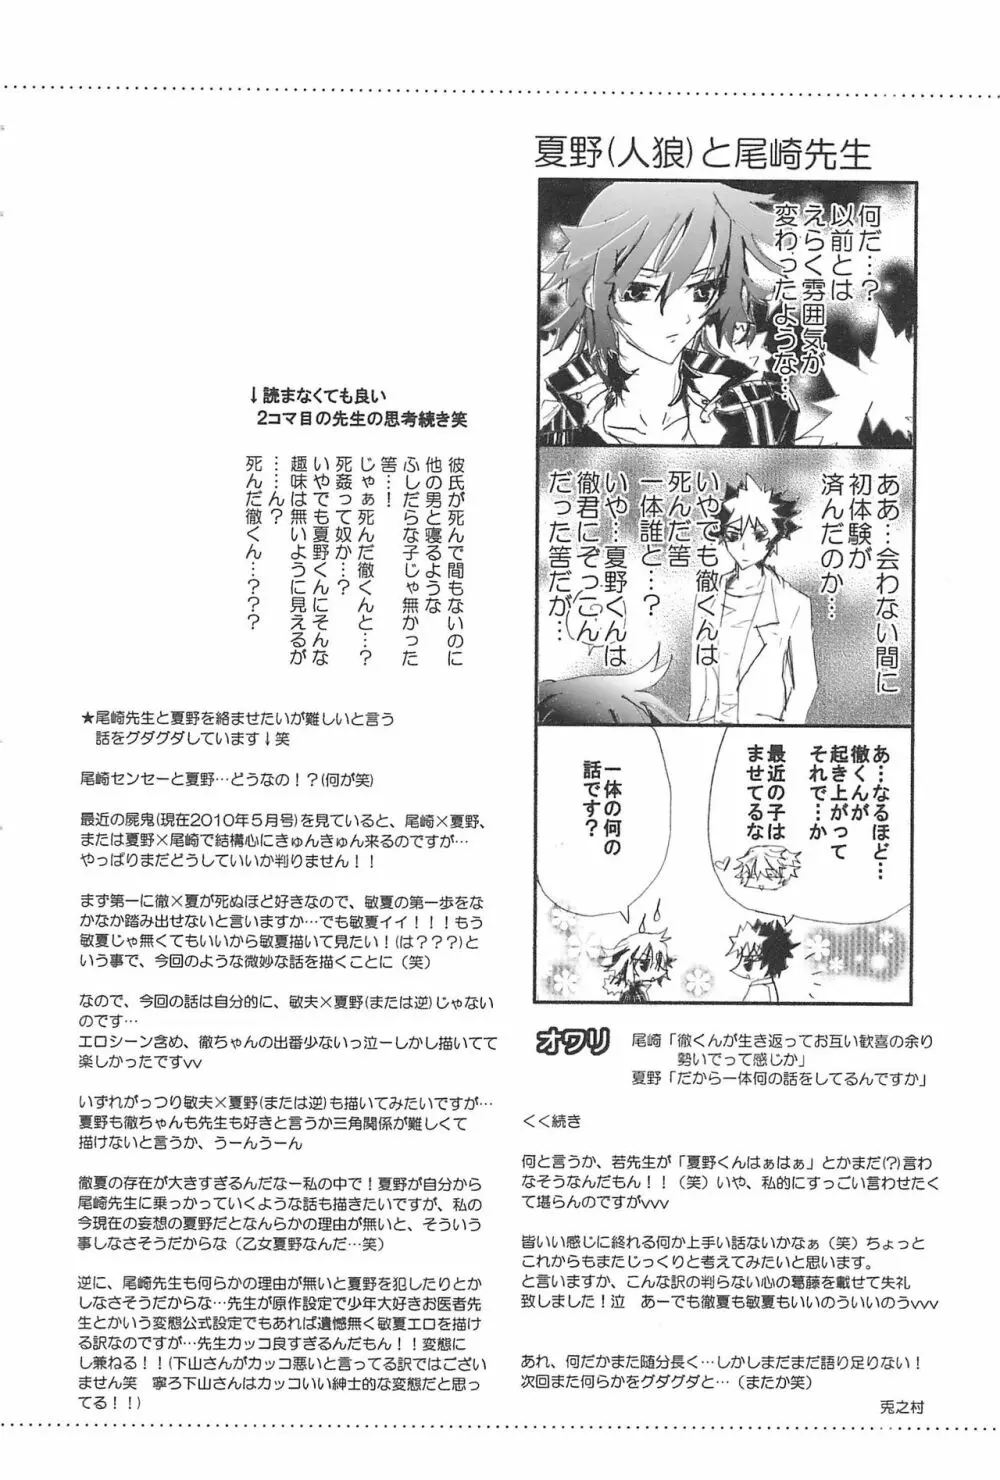 Shiki-hon 10 18ページ